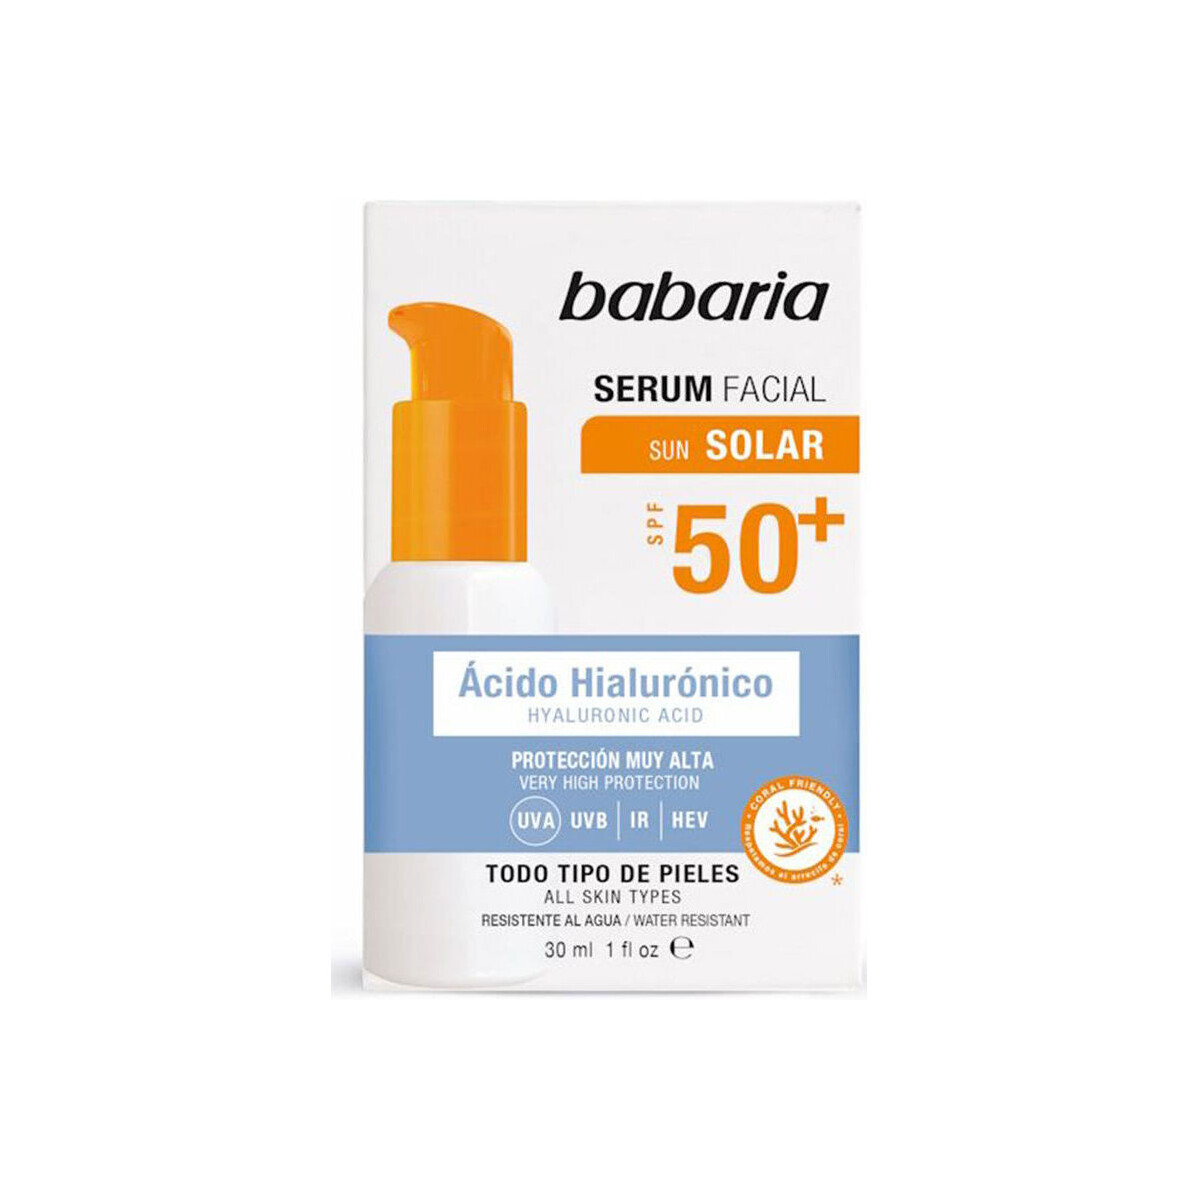 Beauty Sonnenschutz & Sonnenpflege Babaria Solar Hyaluronic Acid Gesichtsserum Lsf50+ 